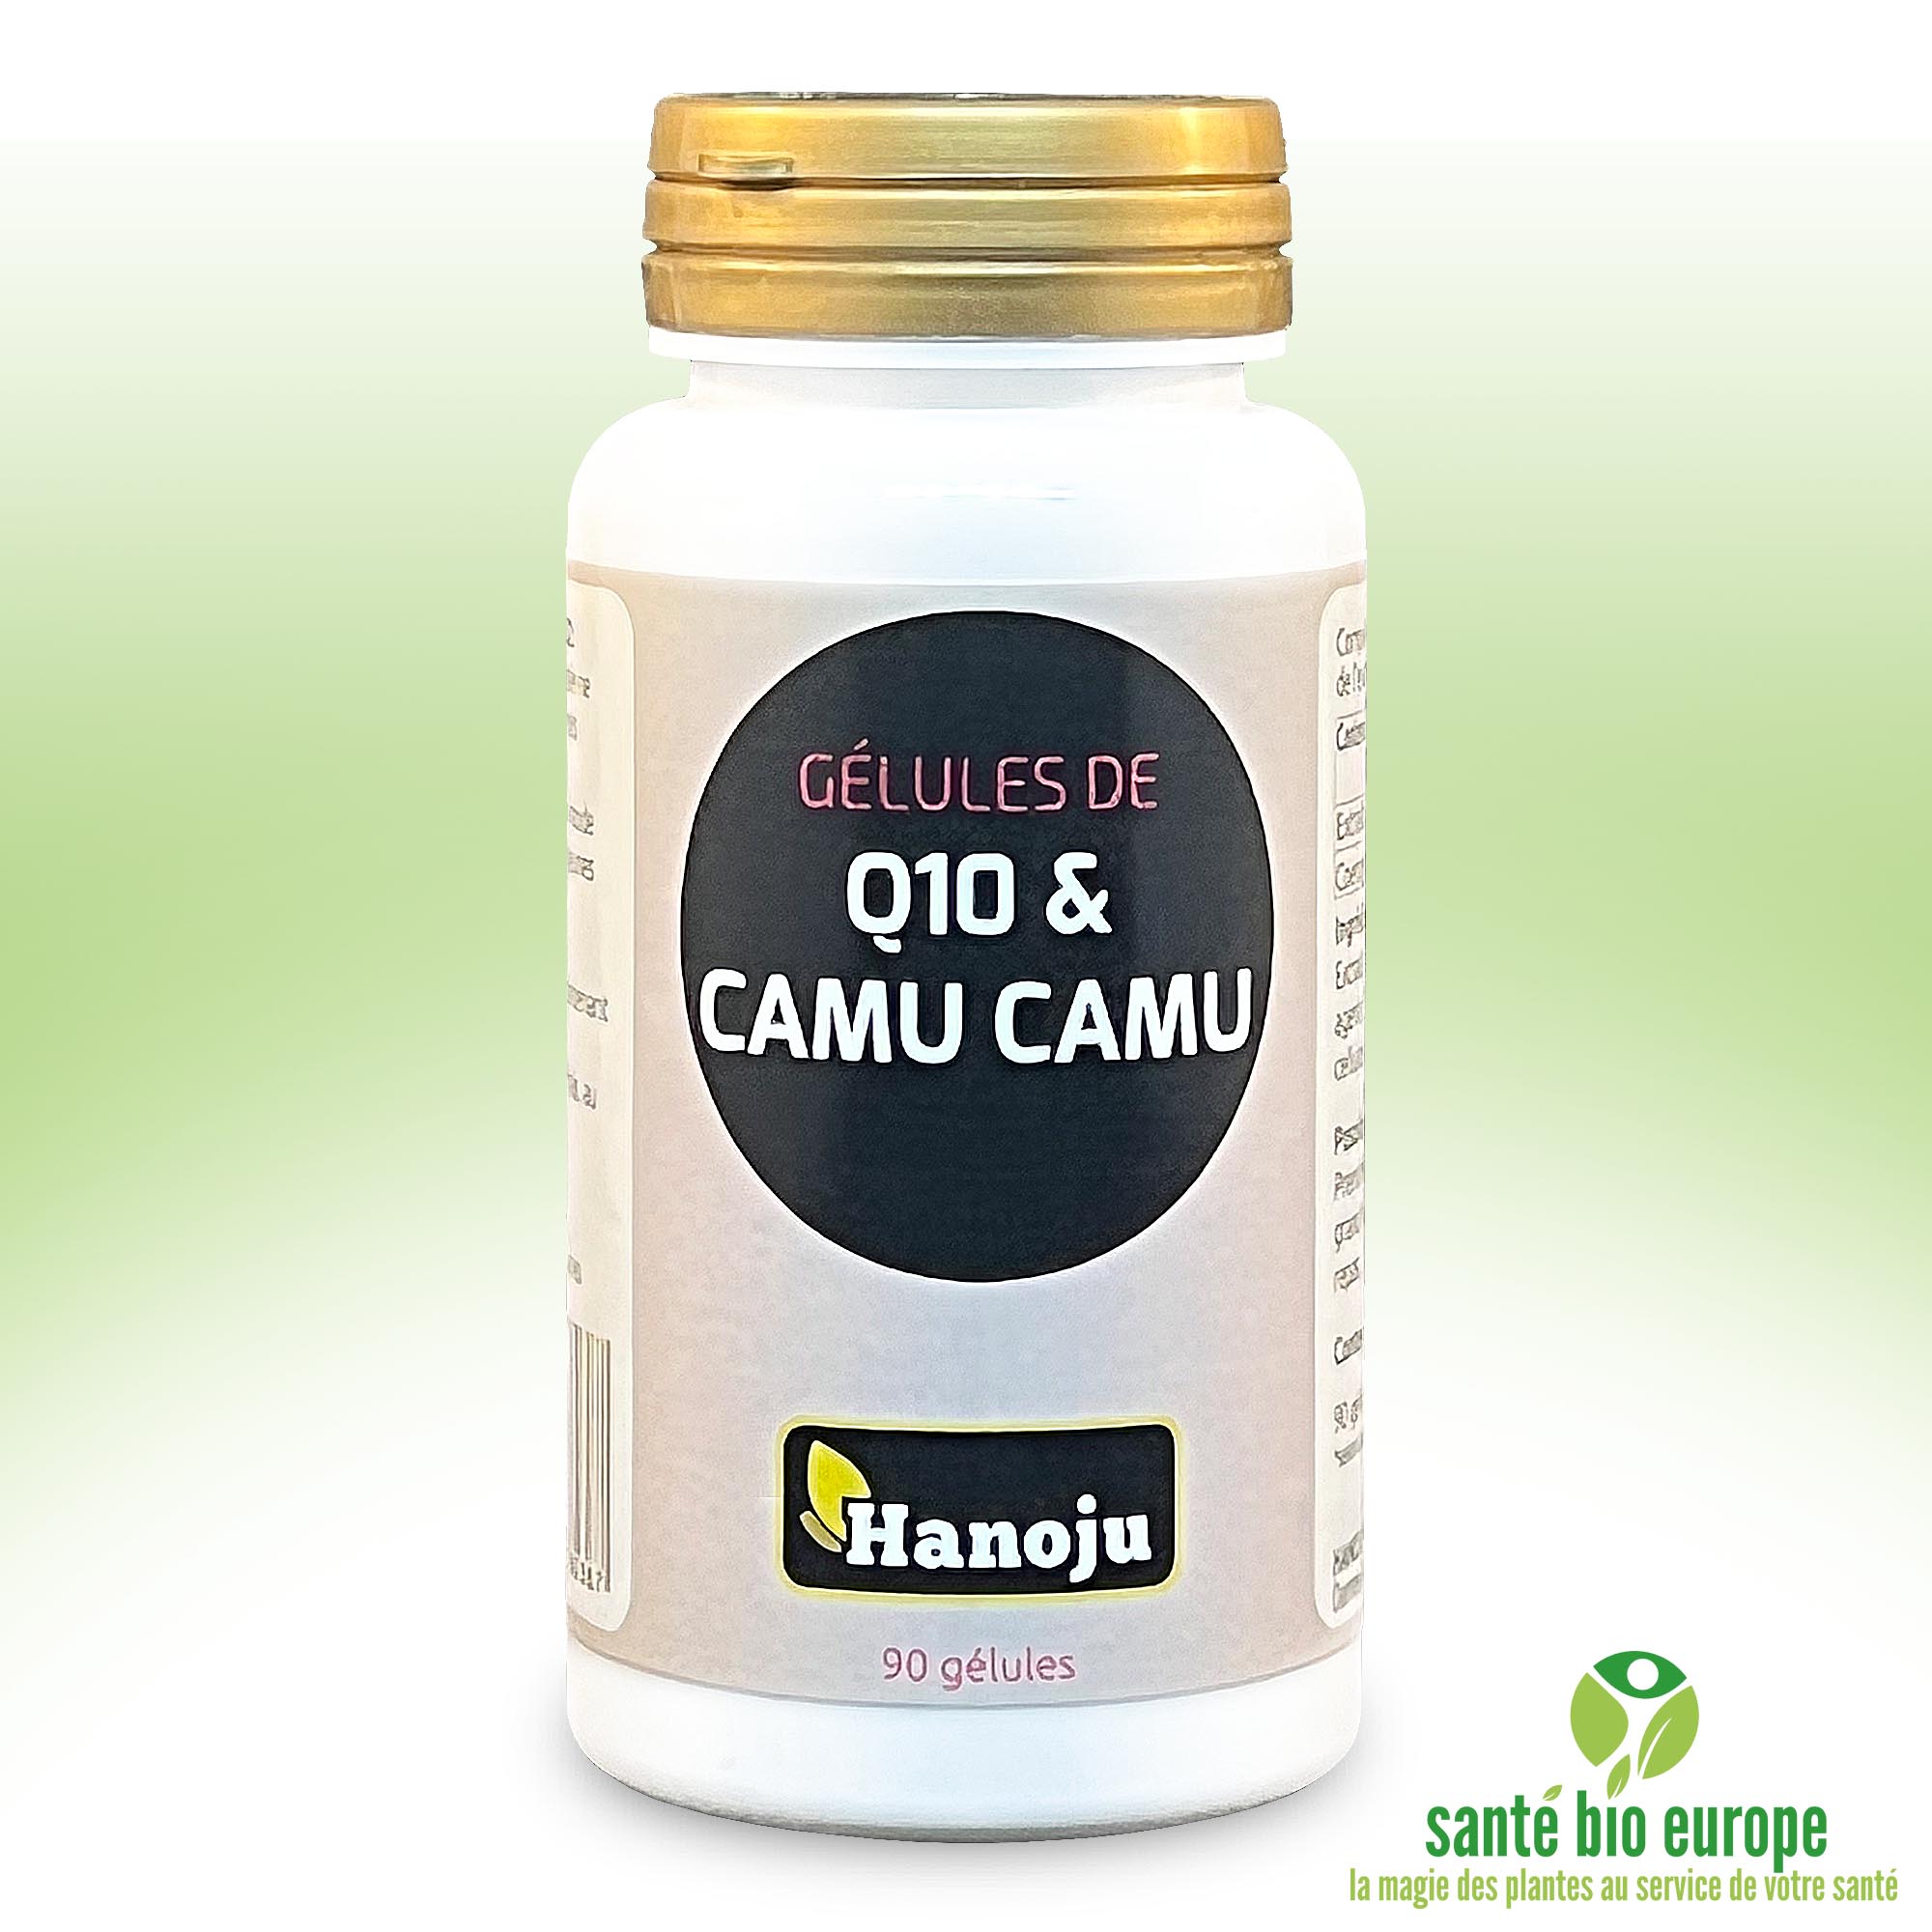 Q10 k Camu Camu (90 gélules) front